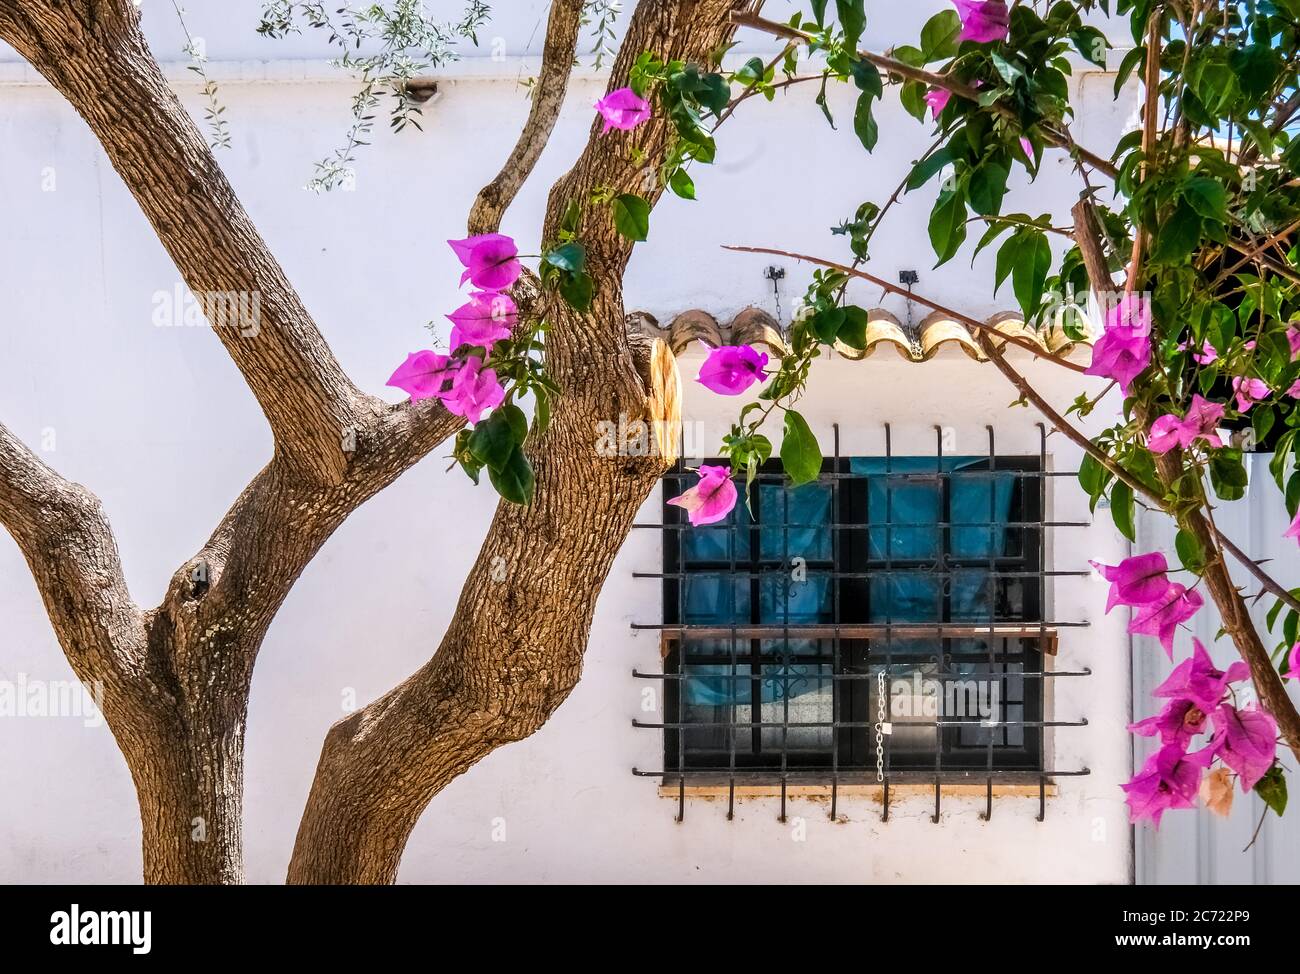 Olivo y buganvilla florido en un patio trasero en el complejo turístico Cala d'Or en la costa sureste de Mallorca. Ventana barrada, Santanyí, Europa Foto de stock